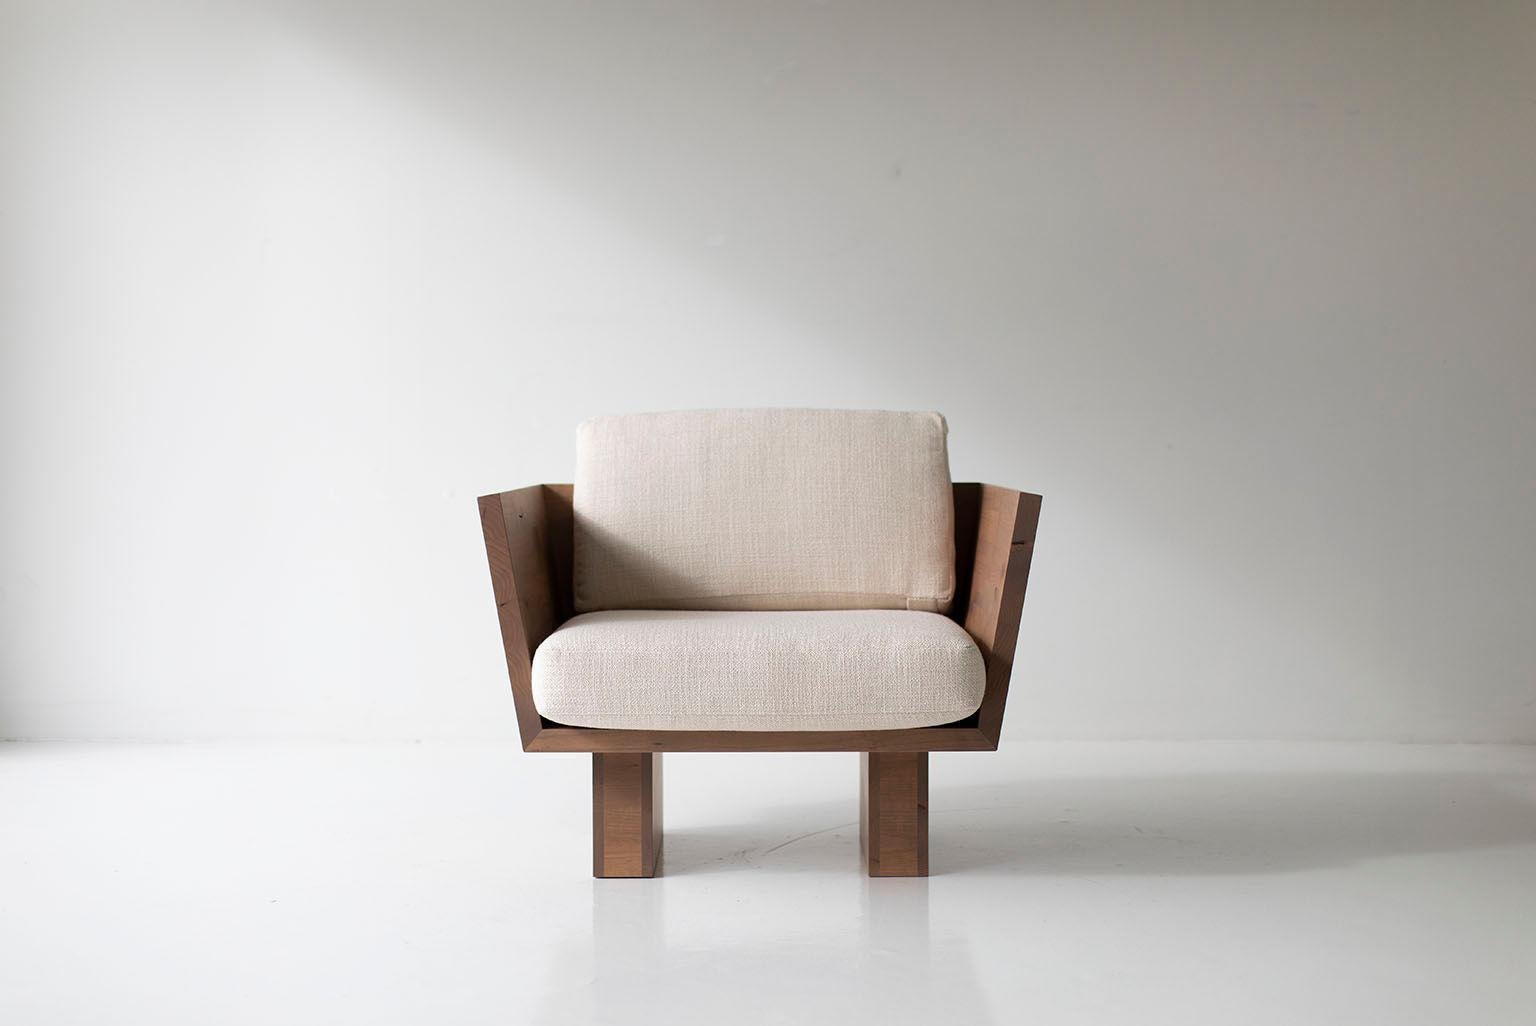 Dieser Suelo Modern Lounge Chair wurde in Ohio, USA, aus massivem Holz gefertigt. Diese Silhouette ist einfach, modern und schlank mit bequemen Rücken- und Sitzkissen. Dies ist der perfekte Stuhl für jeden Raum, ob drinnen oder draußen. Die Suelo